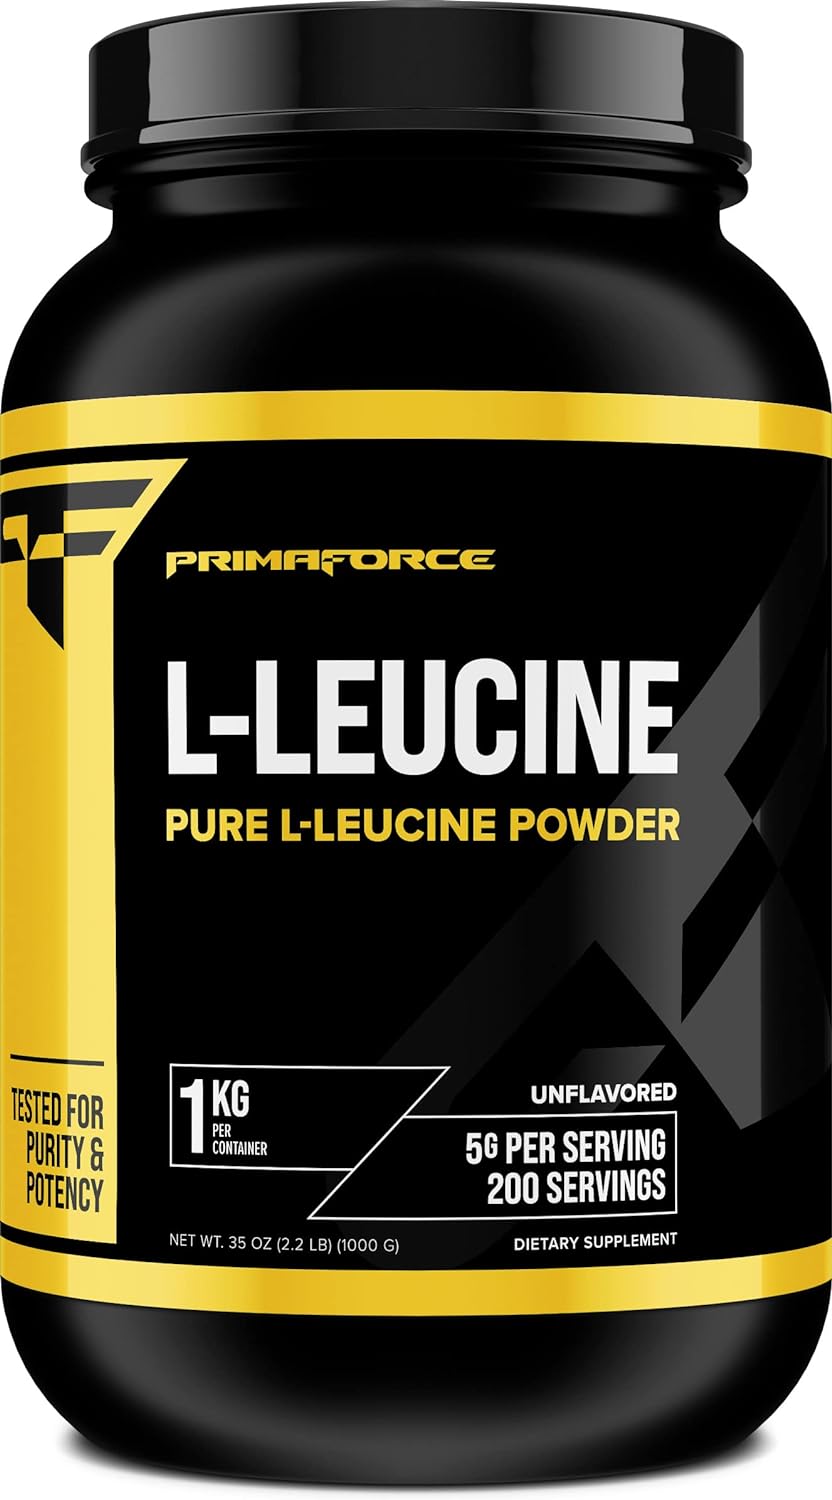 Primaforce L-Leucine Pure Powder 1 KG (2.2lbs) - Non-GMO, Gluten Free,